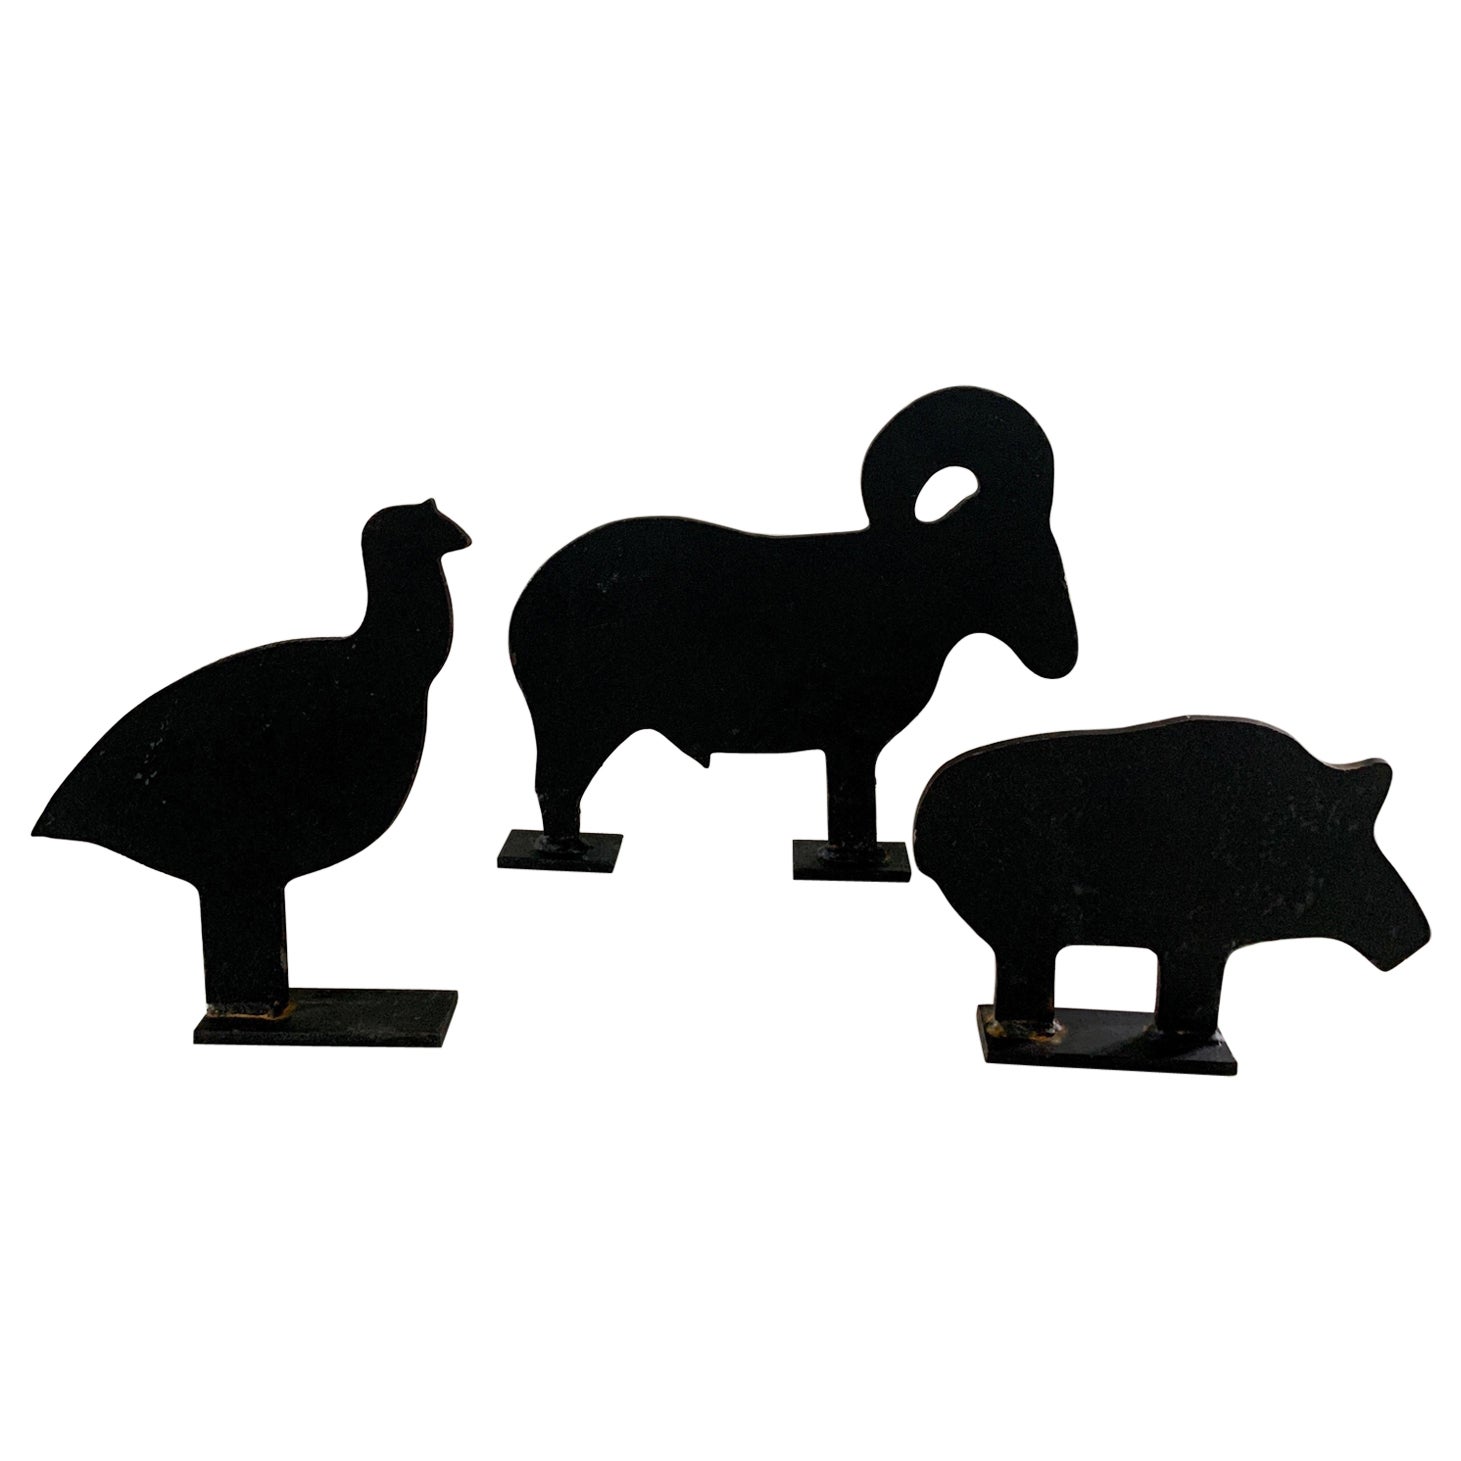 Butoirs de porte vintage en fonte avec silhouette d'animaux de la ferme, lot de 3